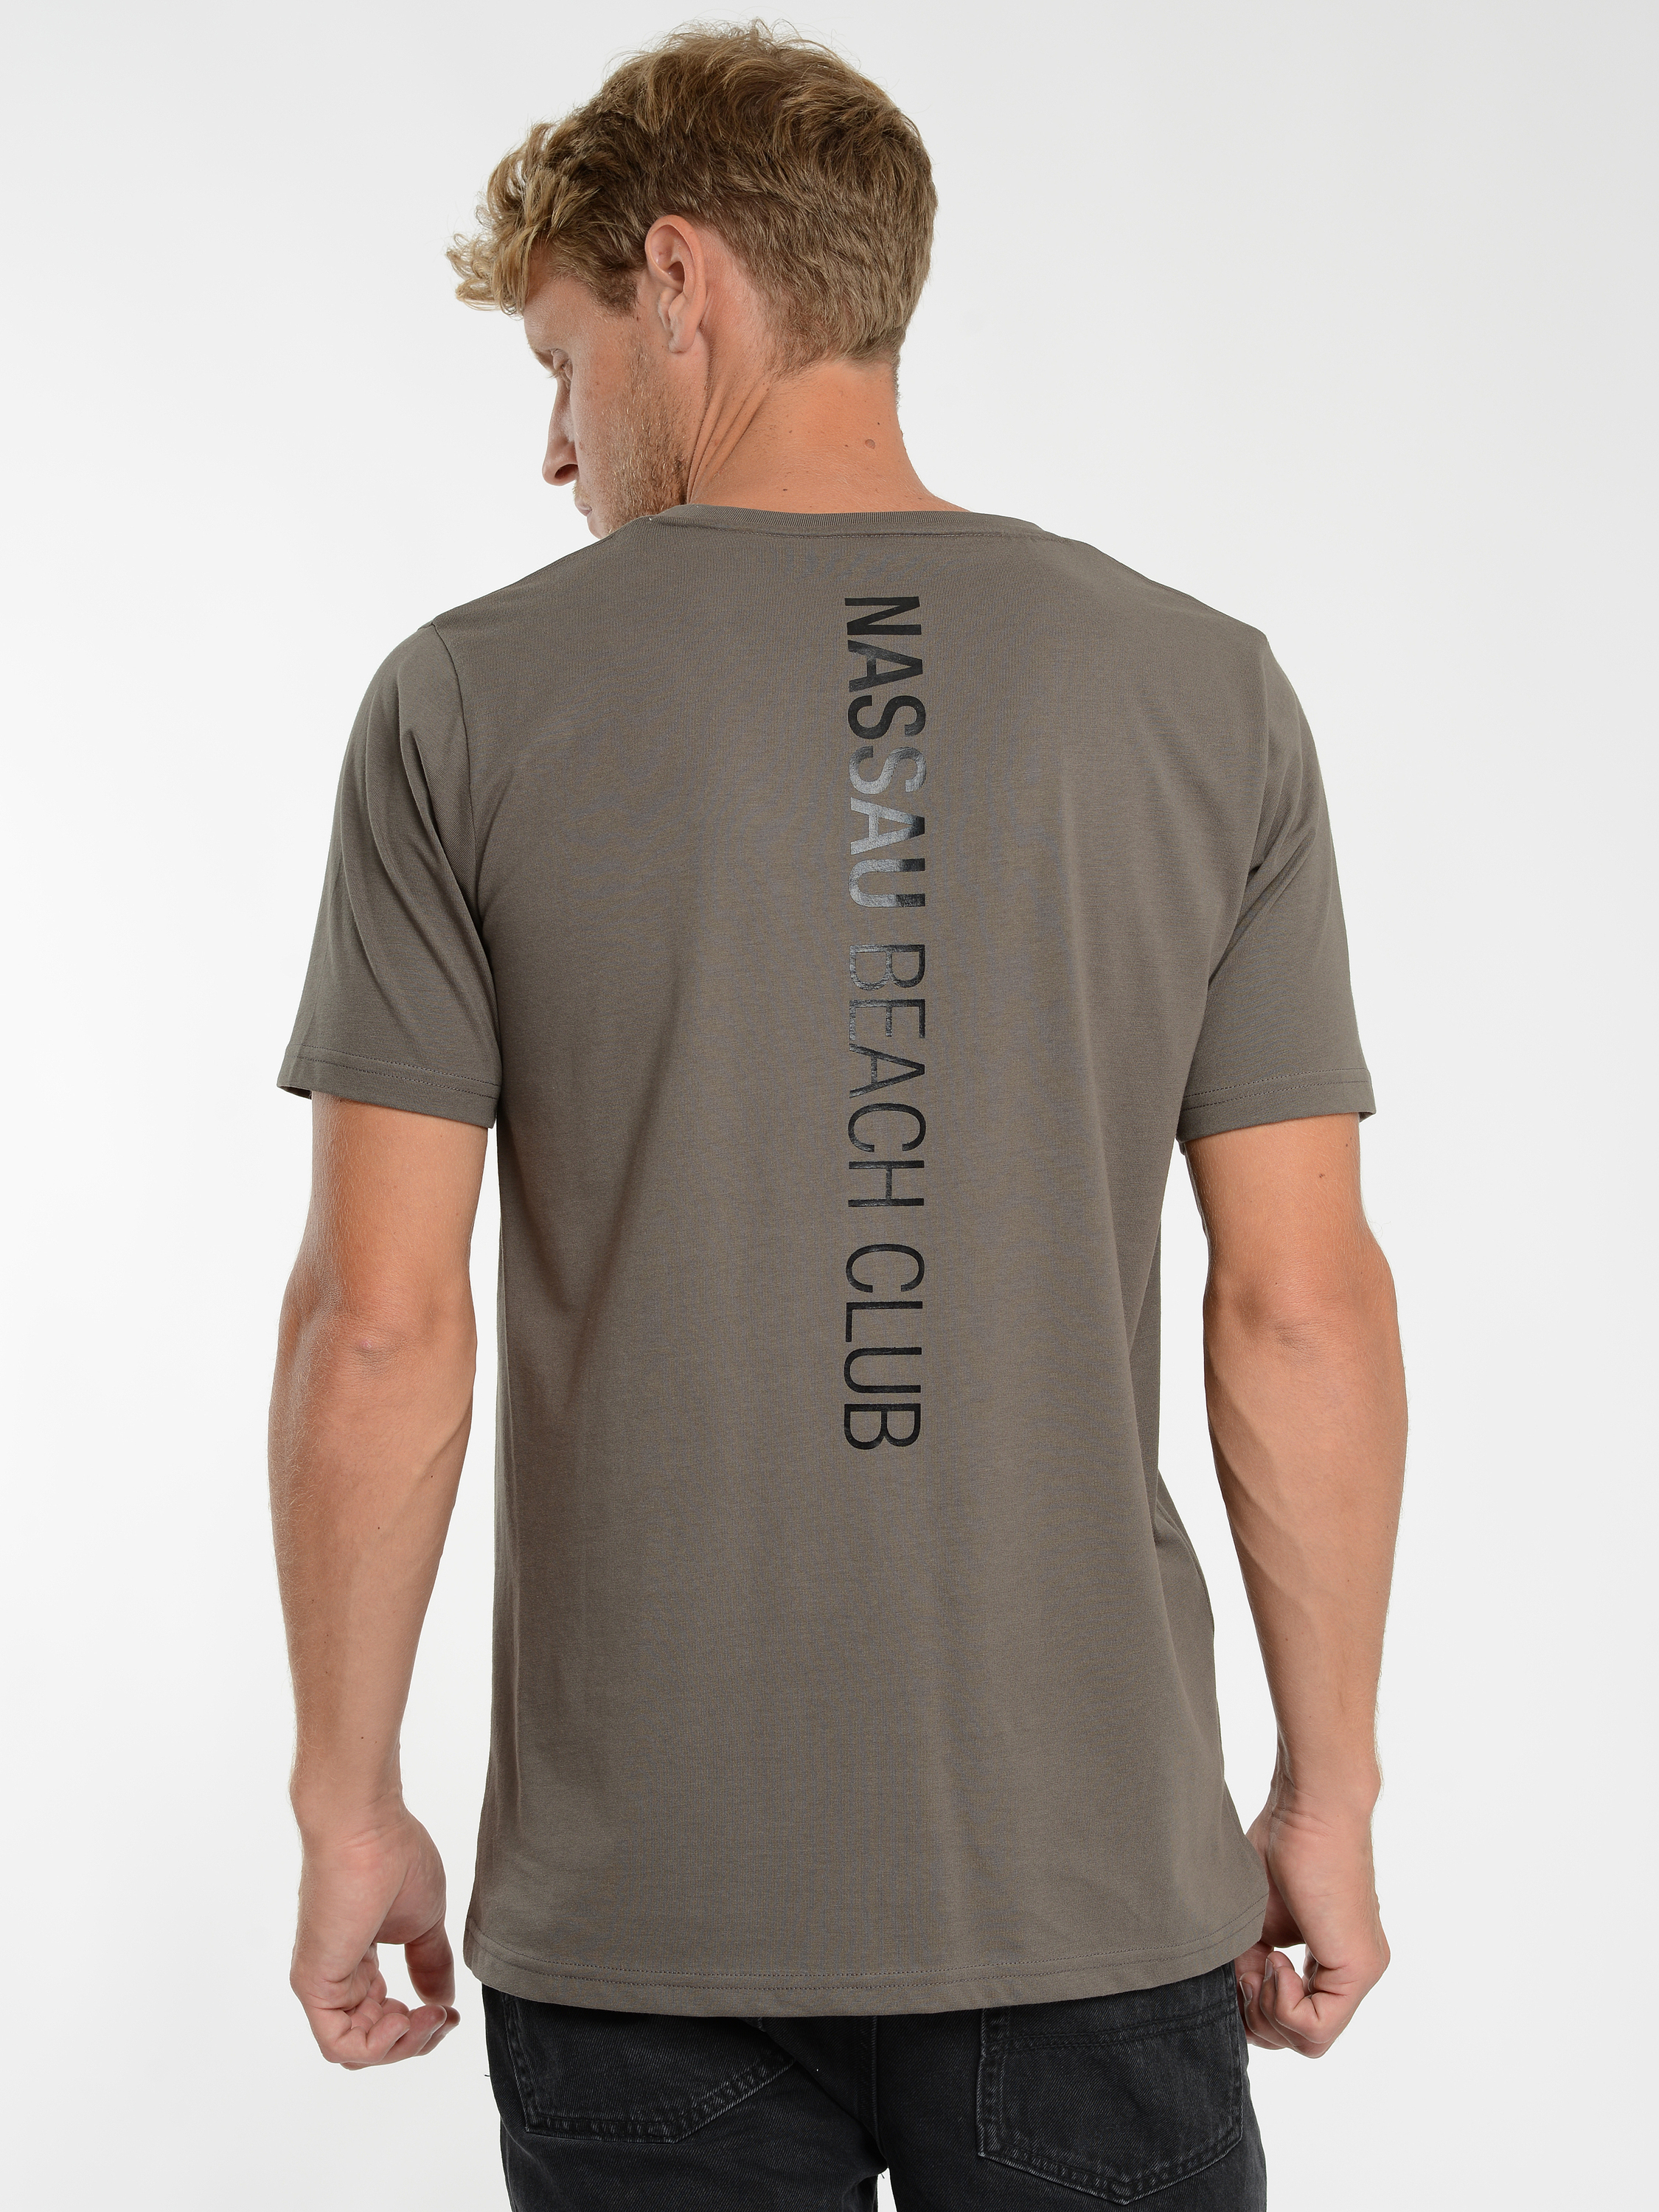  Nassau Beach T-Shirt 22012 